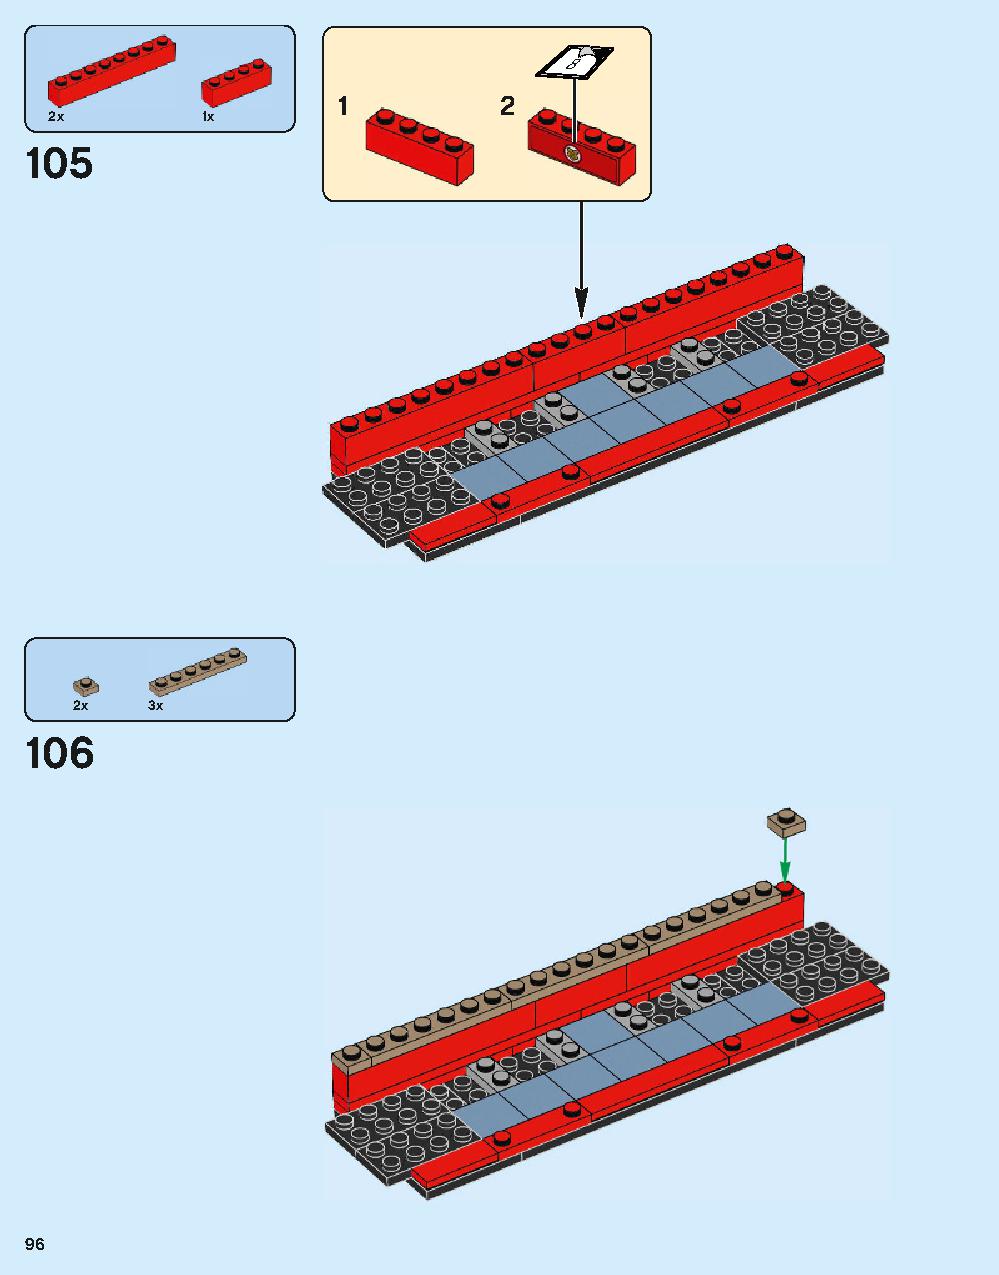 ホグワーツ特急 75955 レゴの商品情報 レゴの説明書・組立方法 96 page